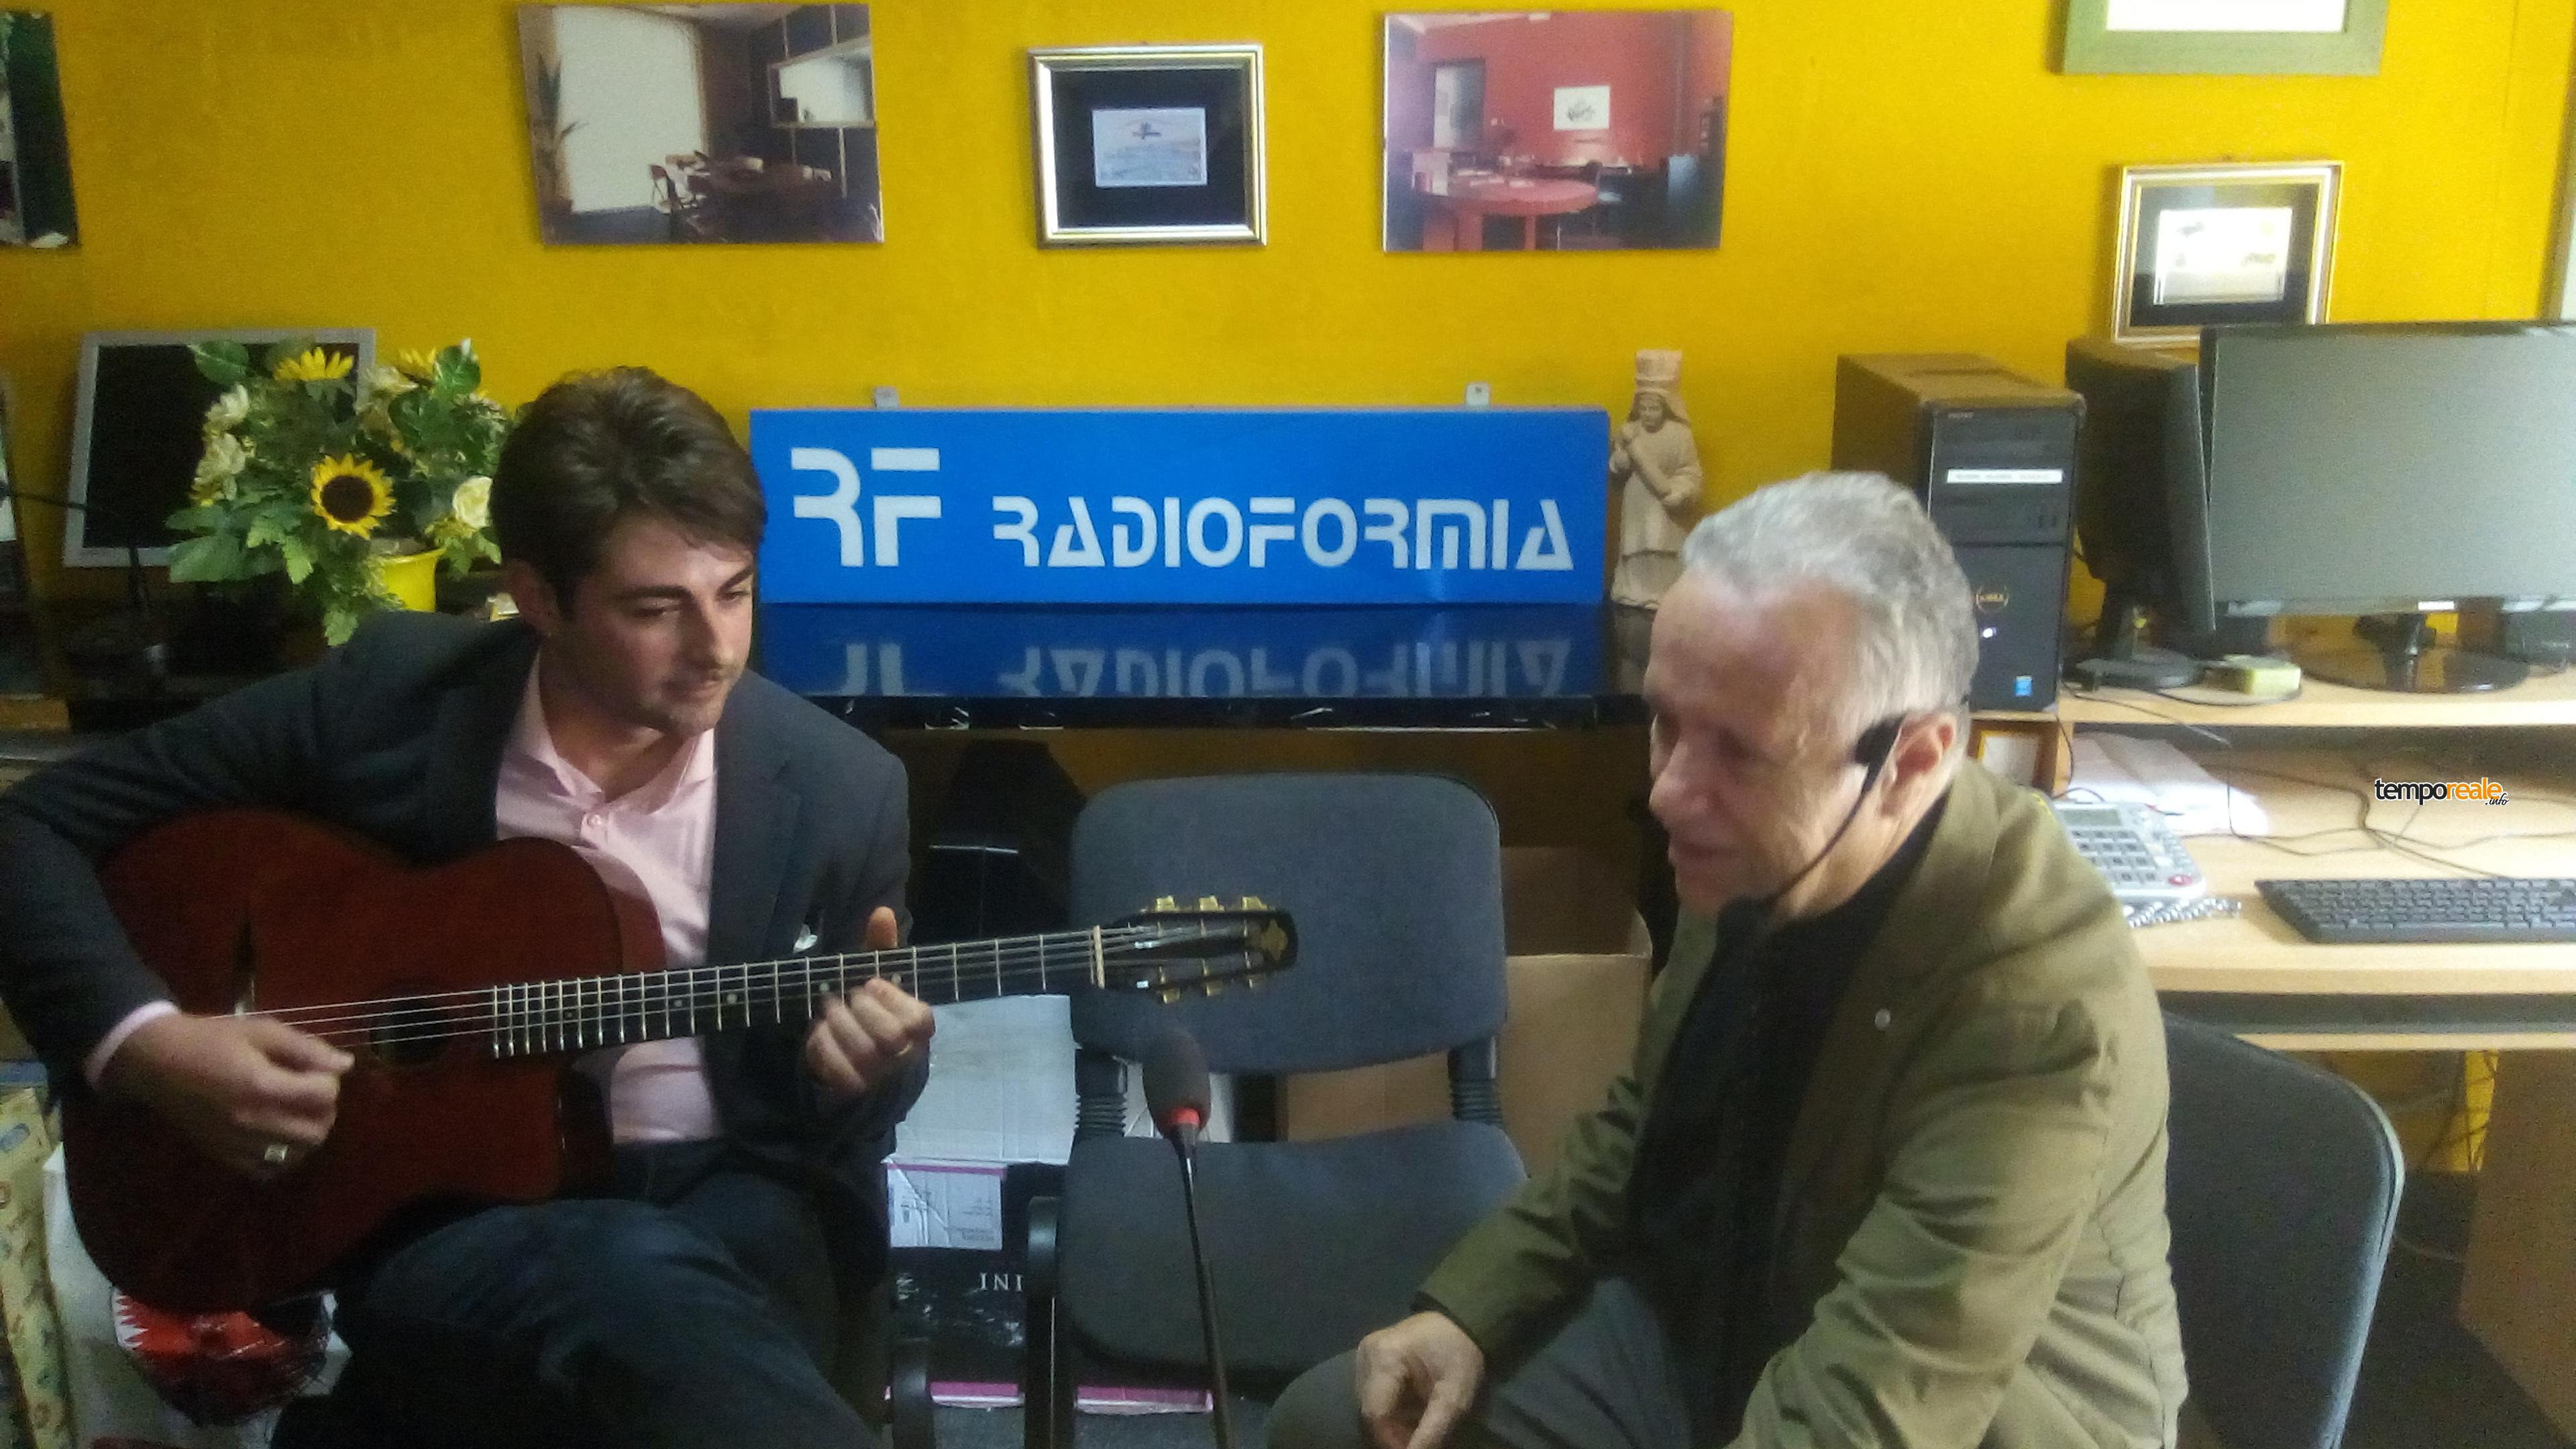 Formia / Il chitarrista Simone Magliozzi effettua un tour radiofonico - Temporeale Quotidiano